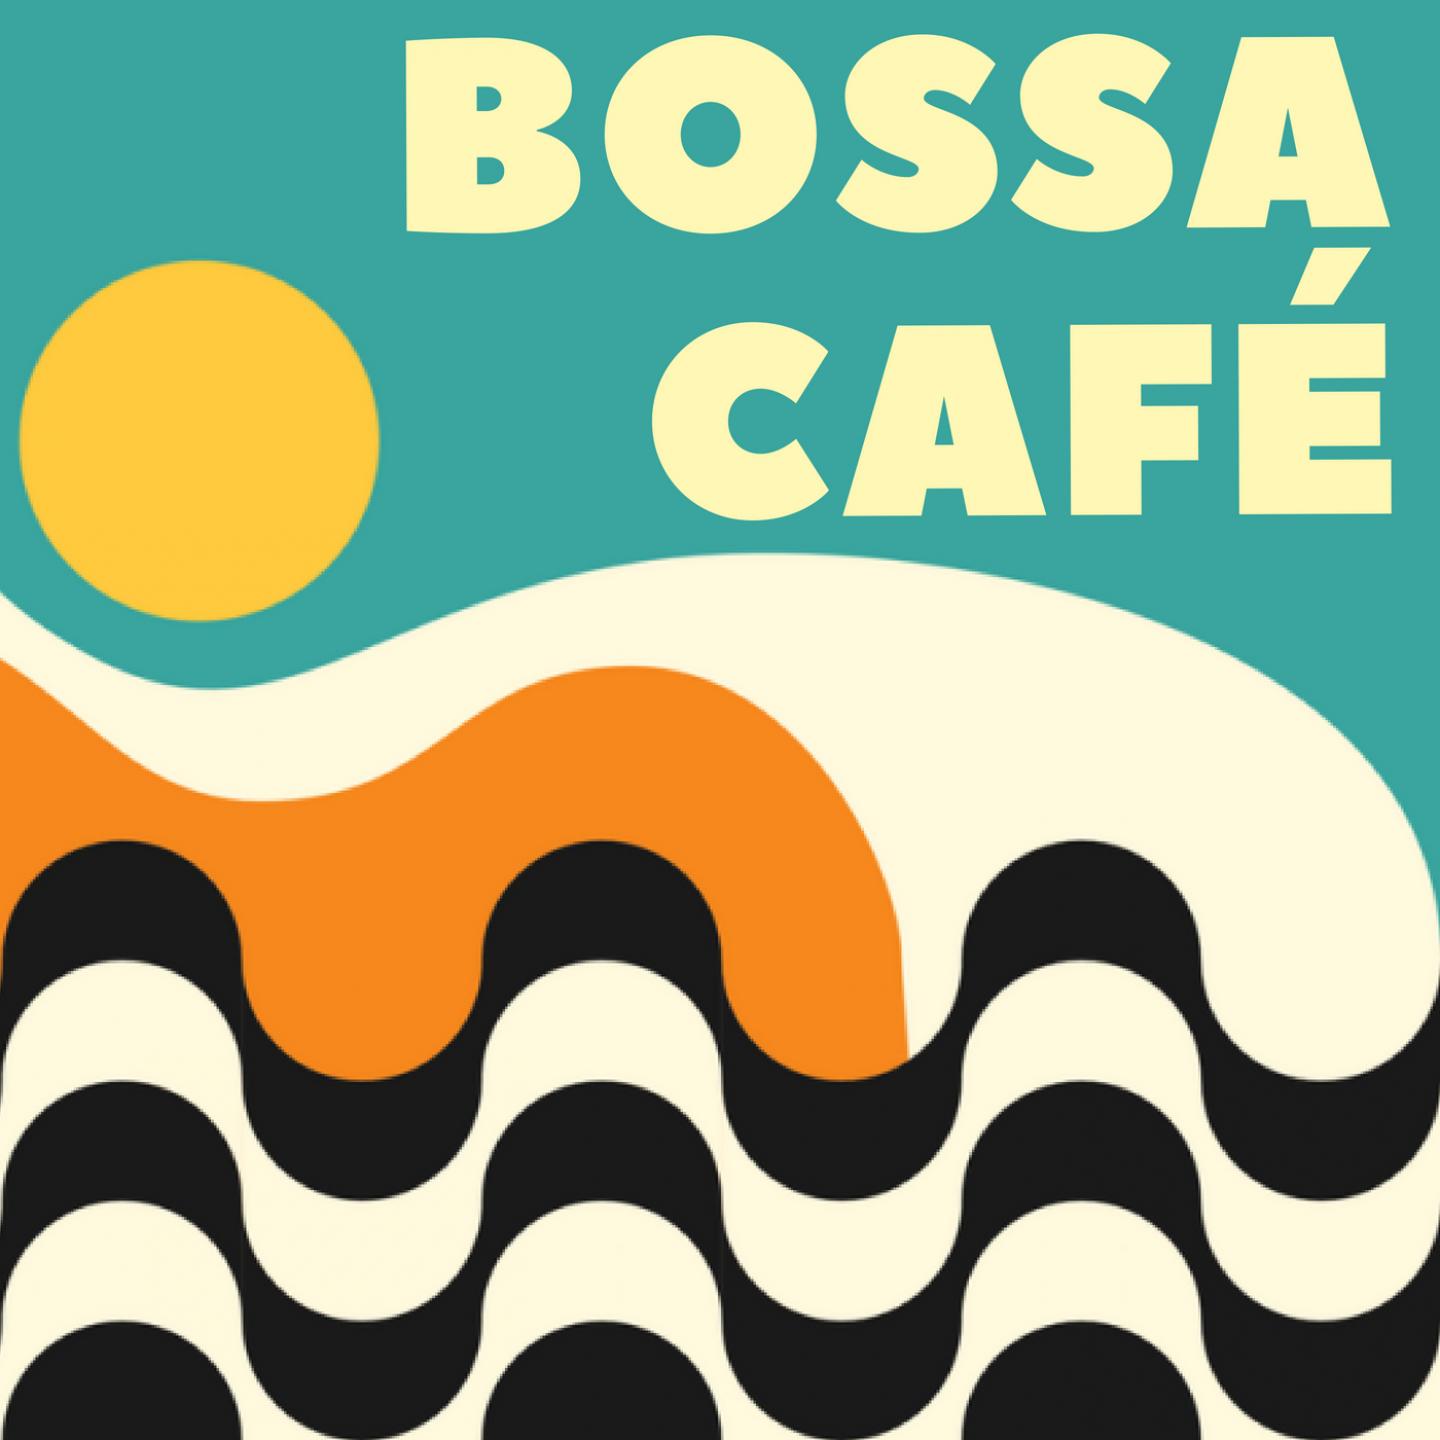 Bossa Nova Cafe Piano BGM